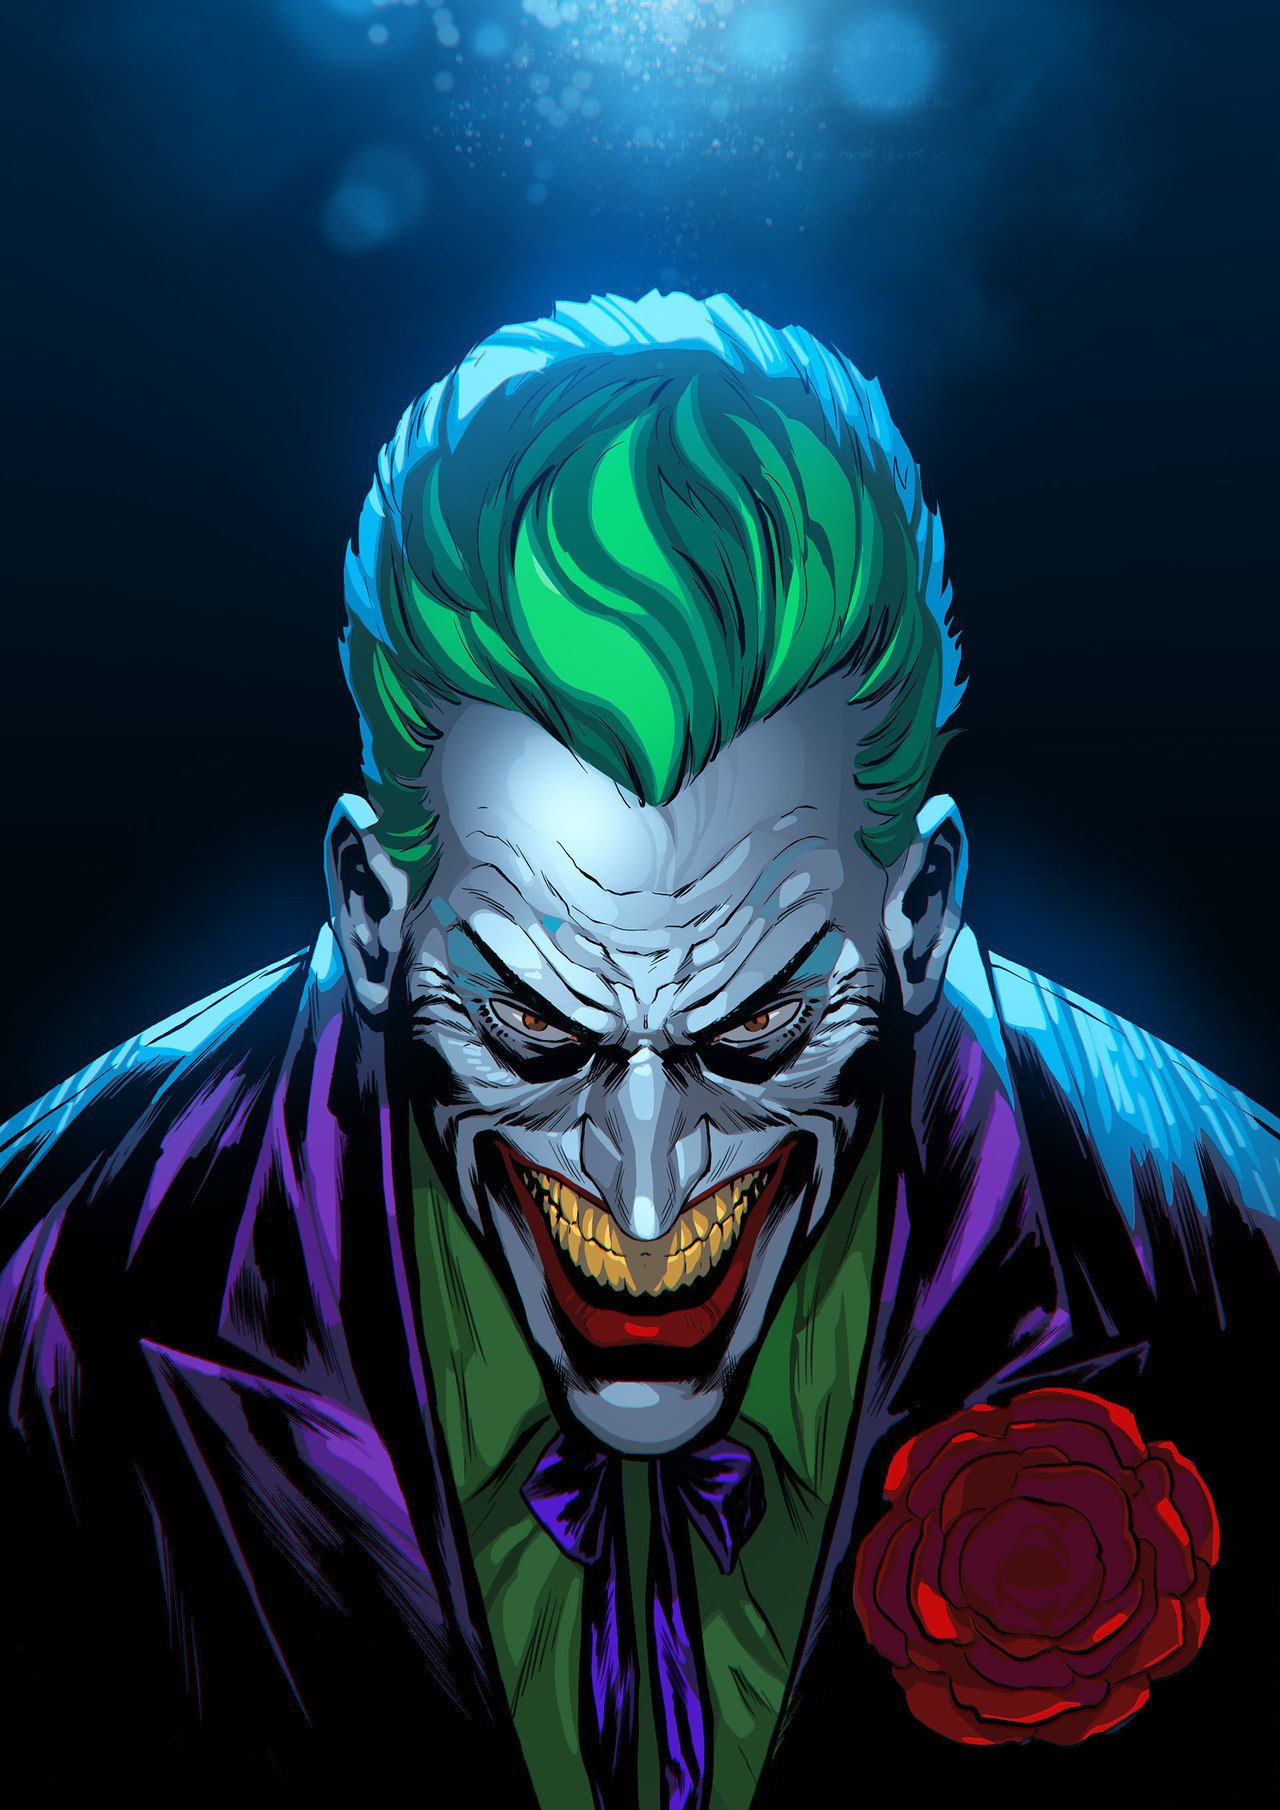 Joker lines by rodrigo lorenzo ig colors by mohammed agbadi da joker ic joker artwork joker wallpapers